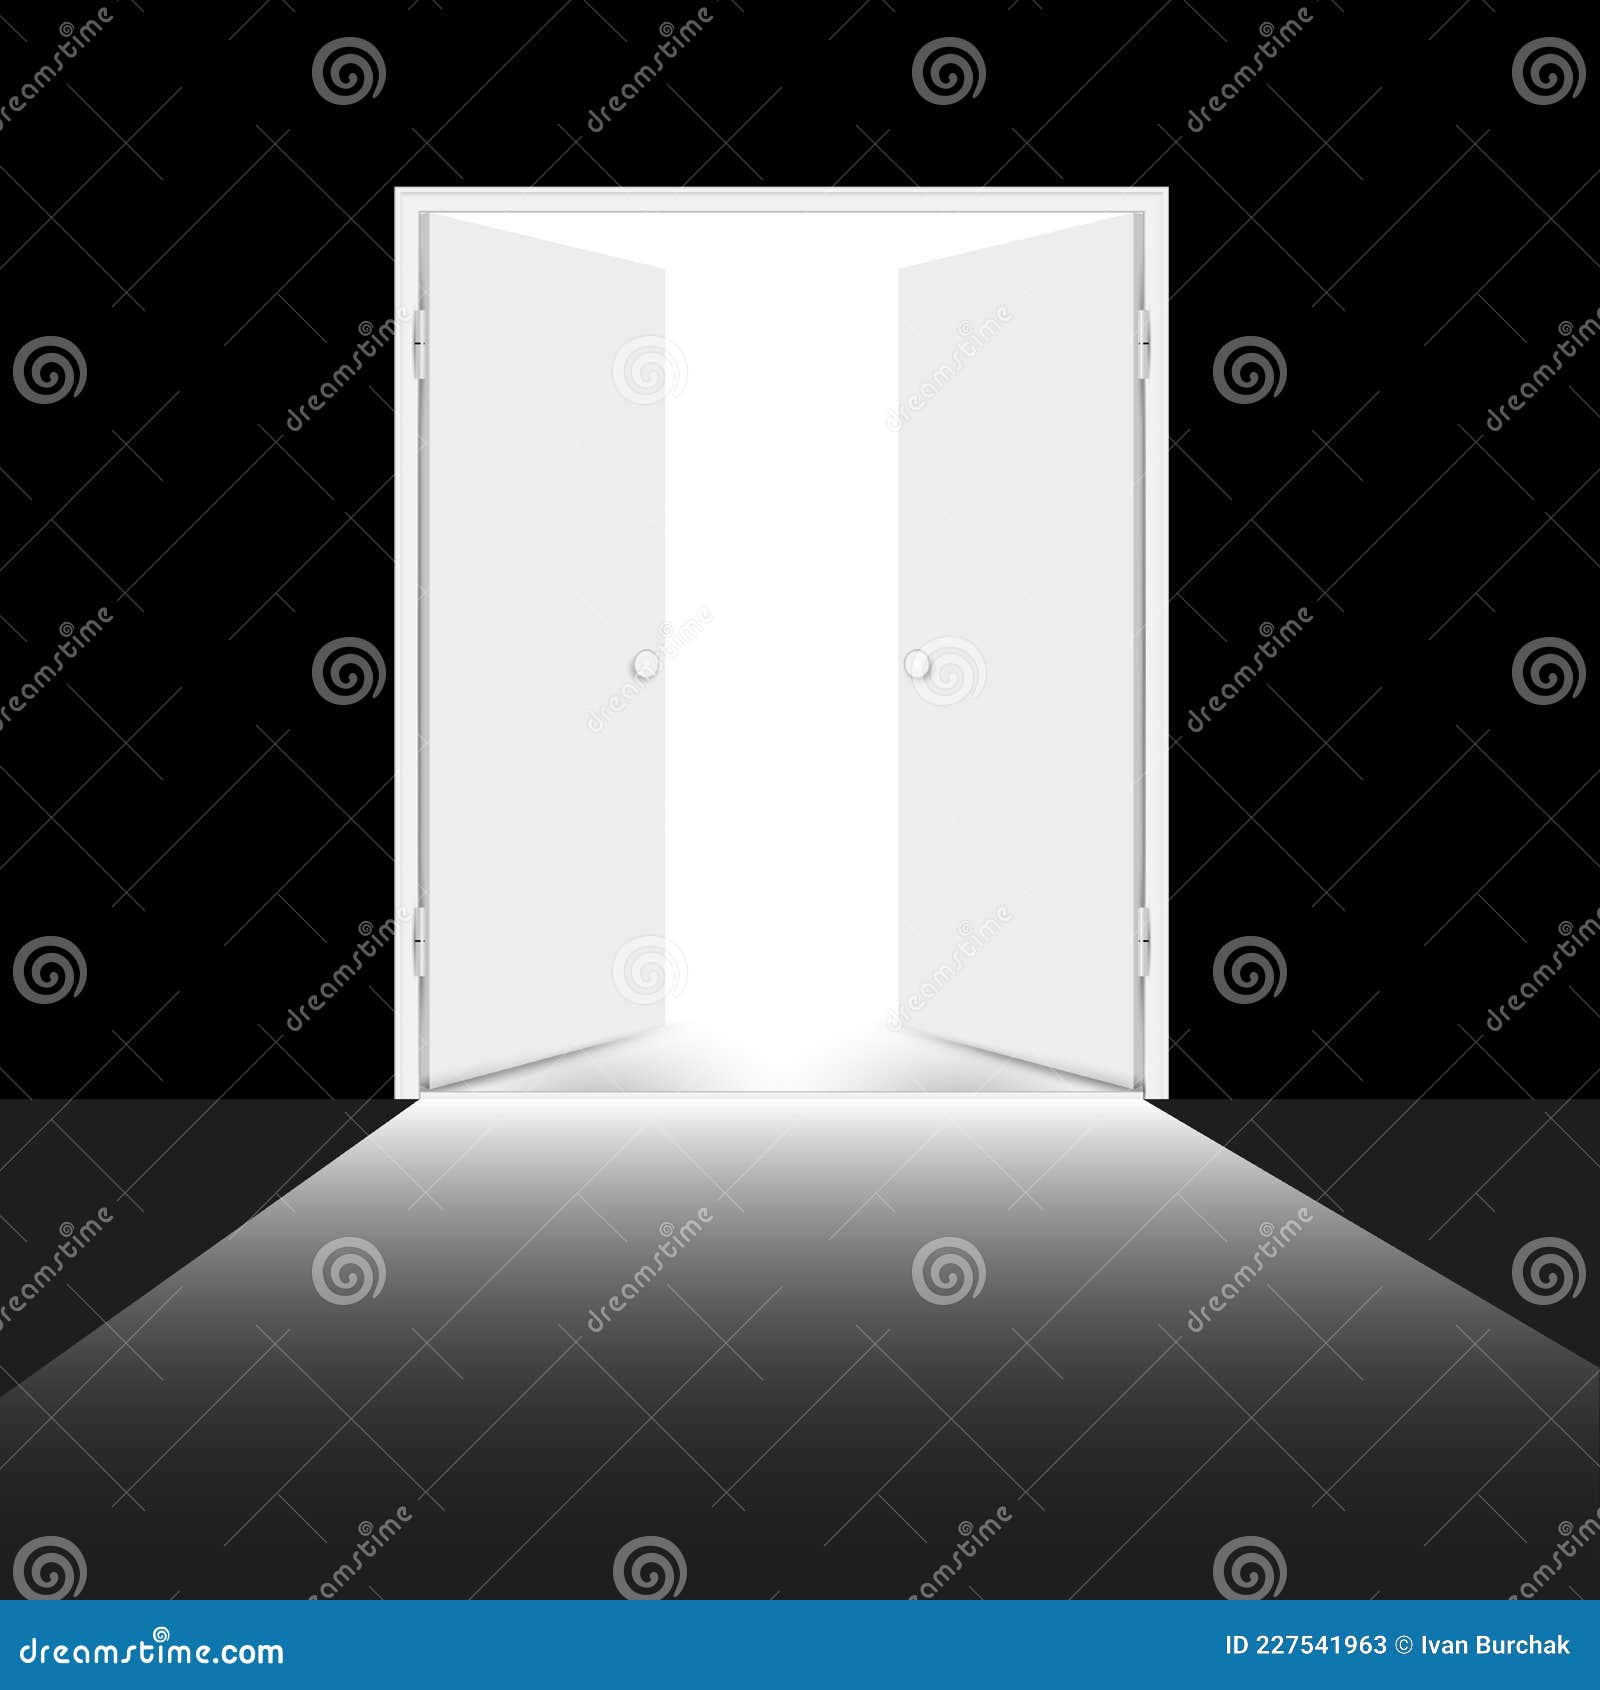 Open Double Door Illustrations Vectors